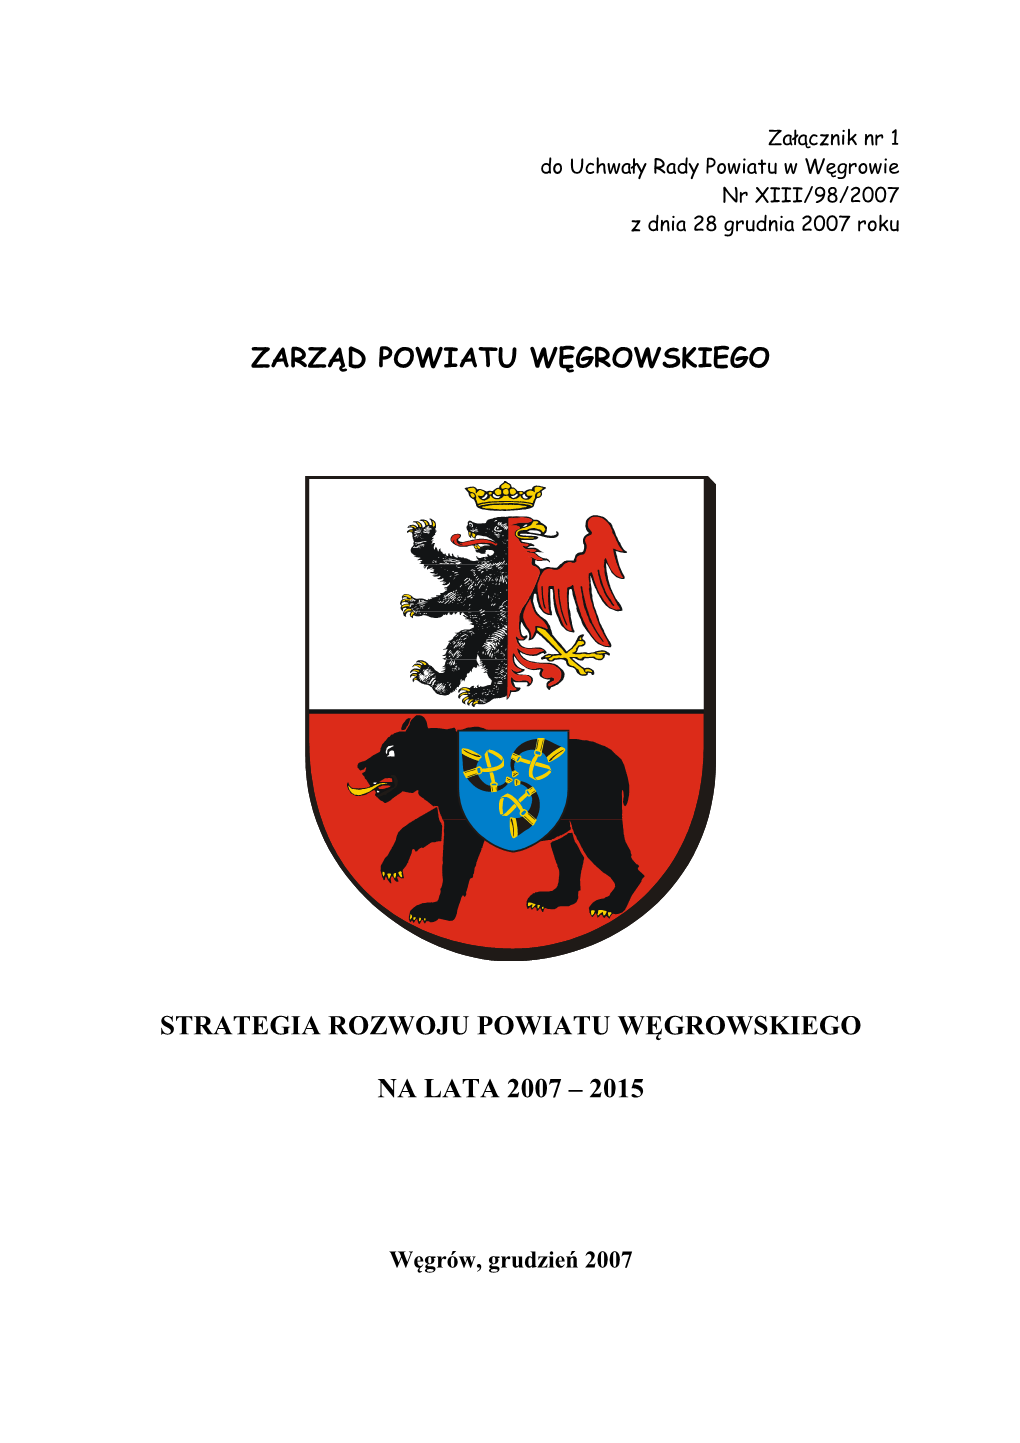 Strategia Rozwoju Powiatu Węgrowskiego